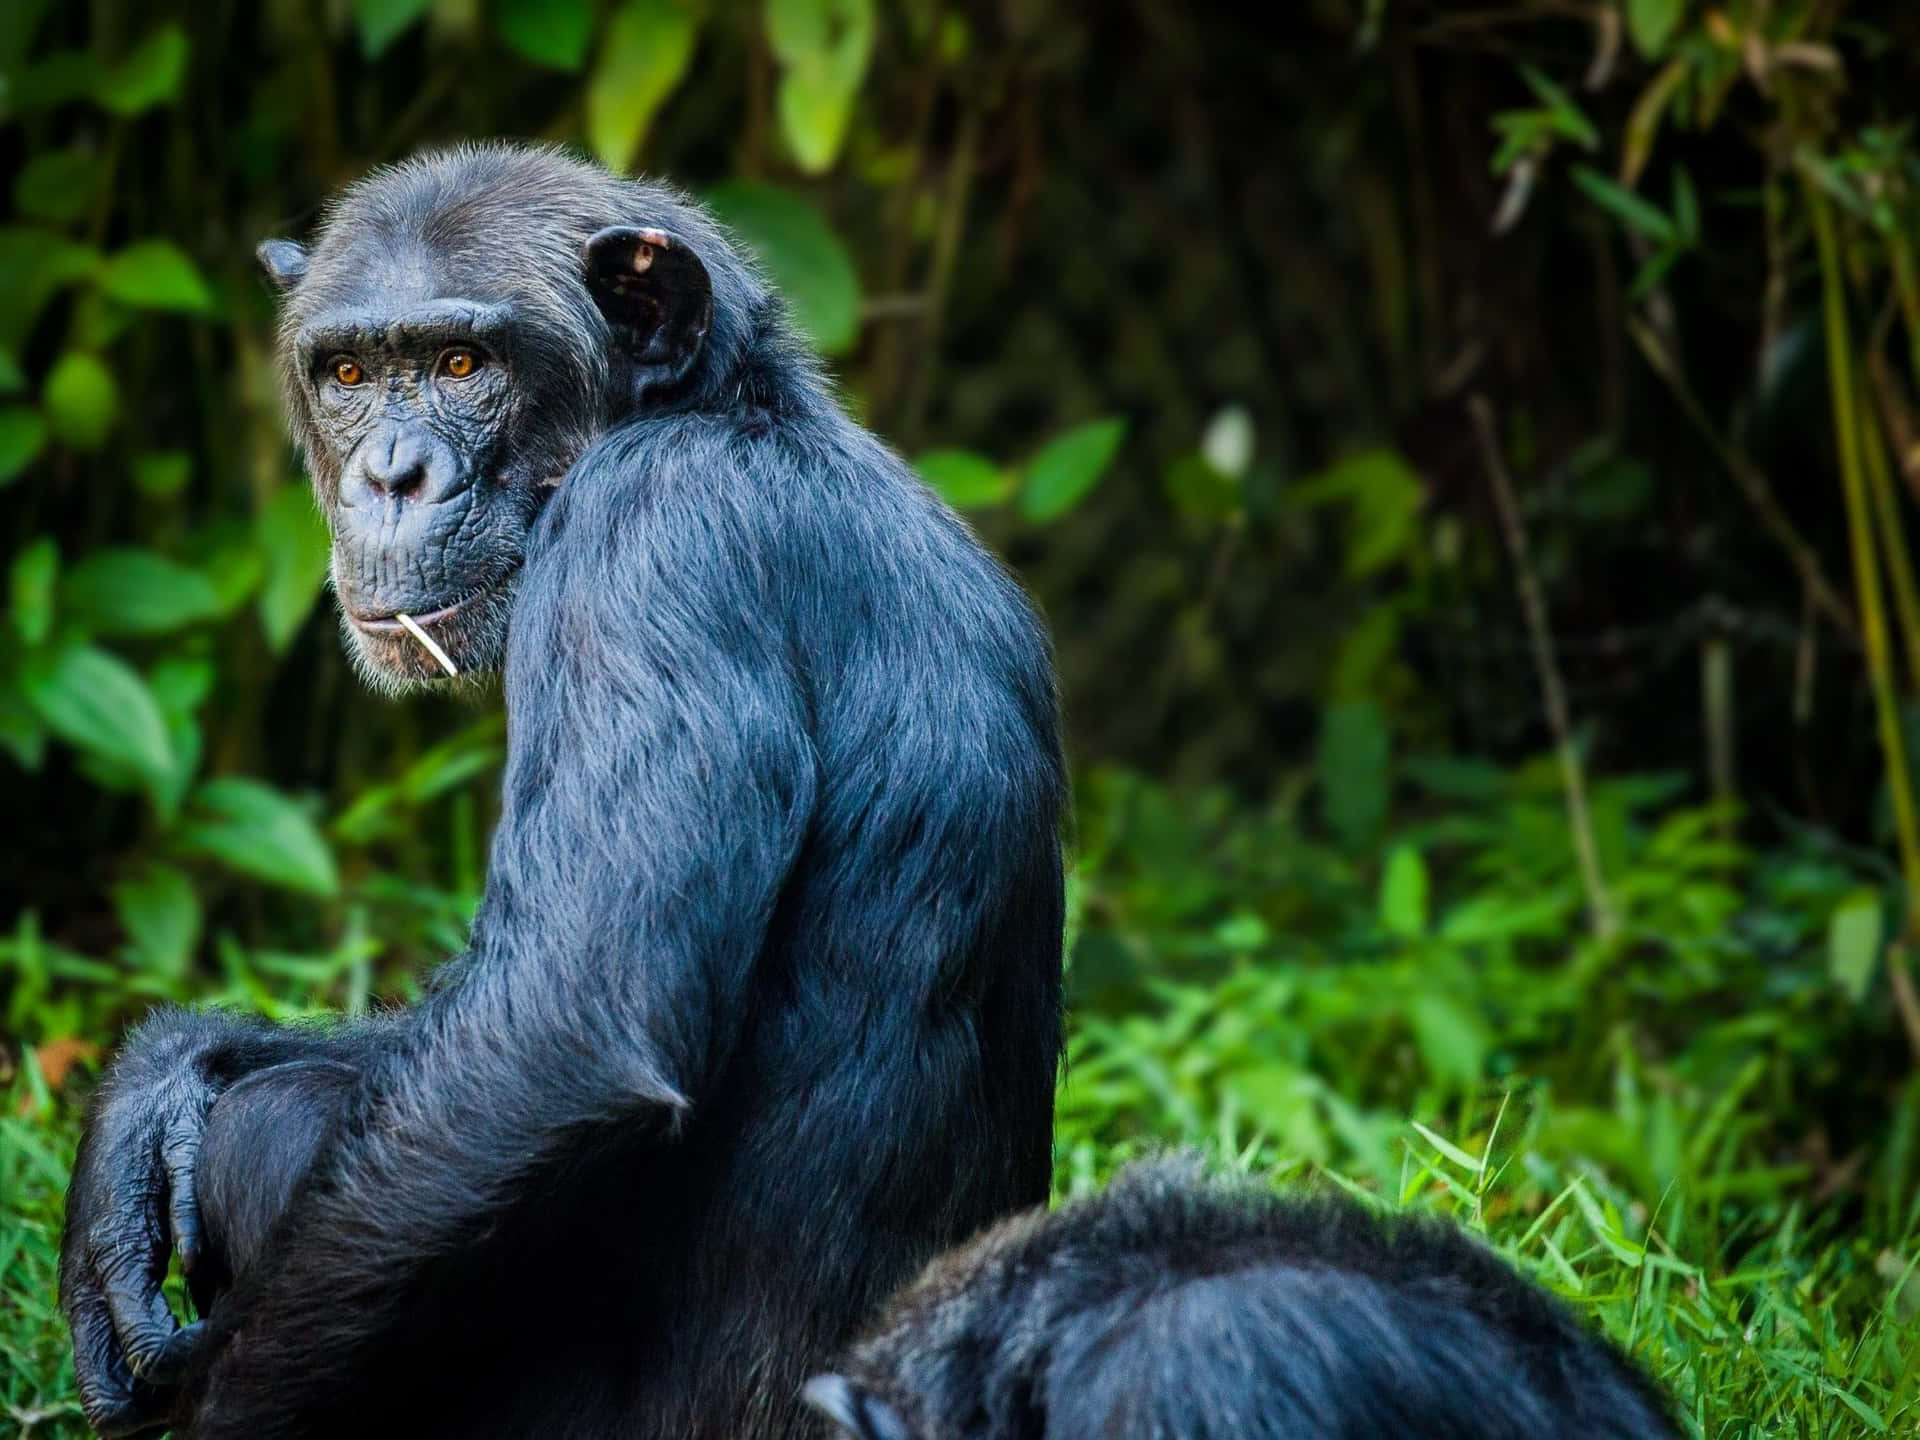 Unprimer Plano De Un Chimpancé